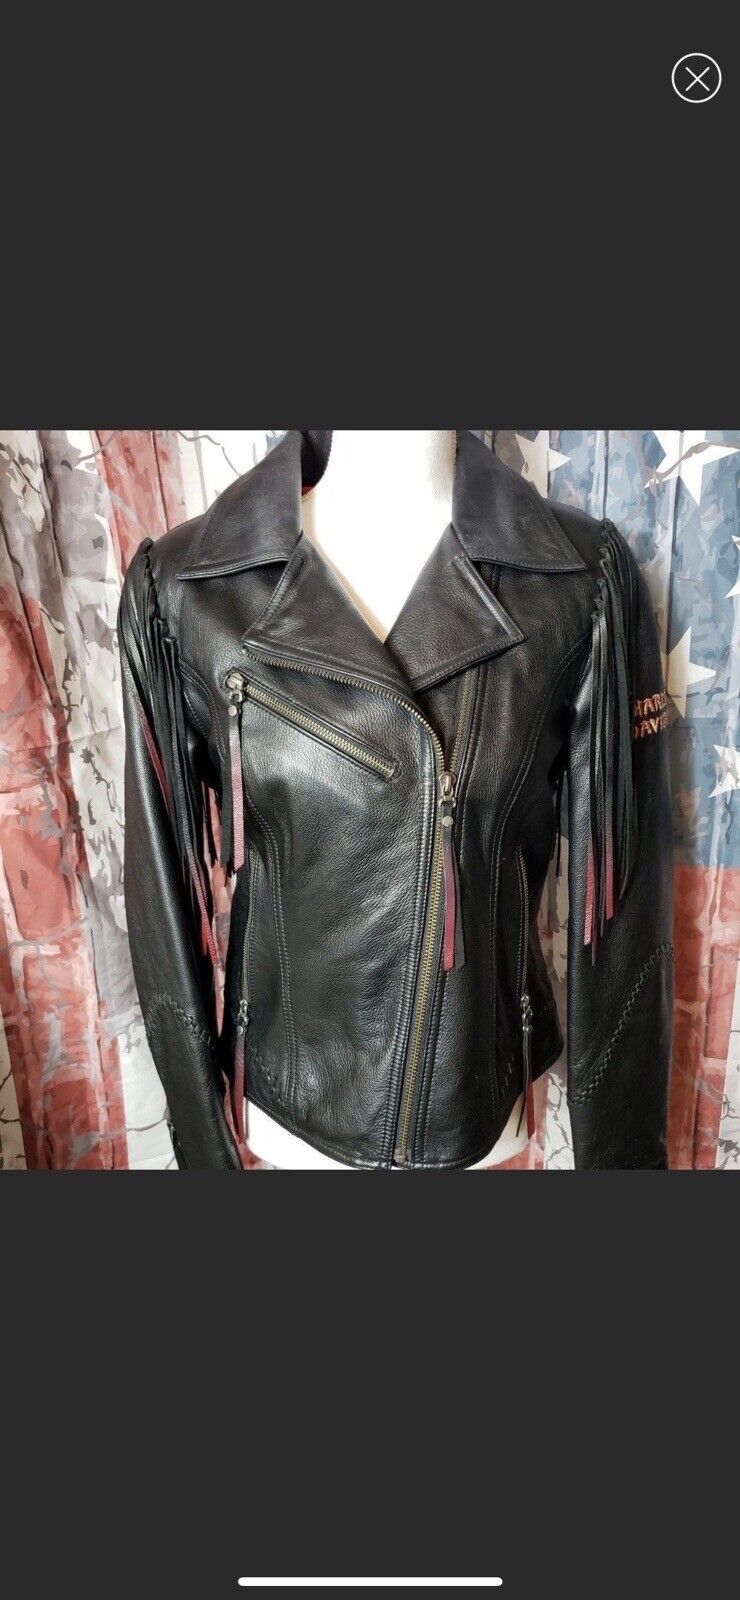 Harley Davidson tassel leather jacket petite xlarge